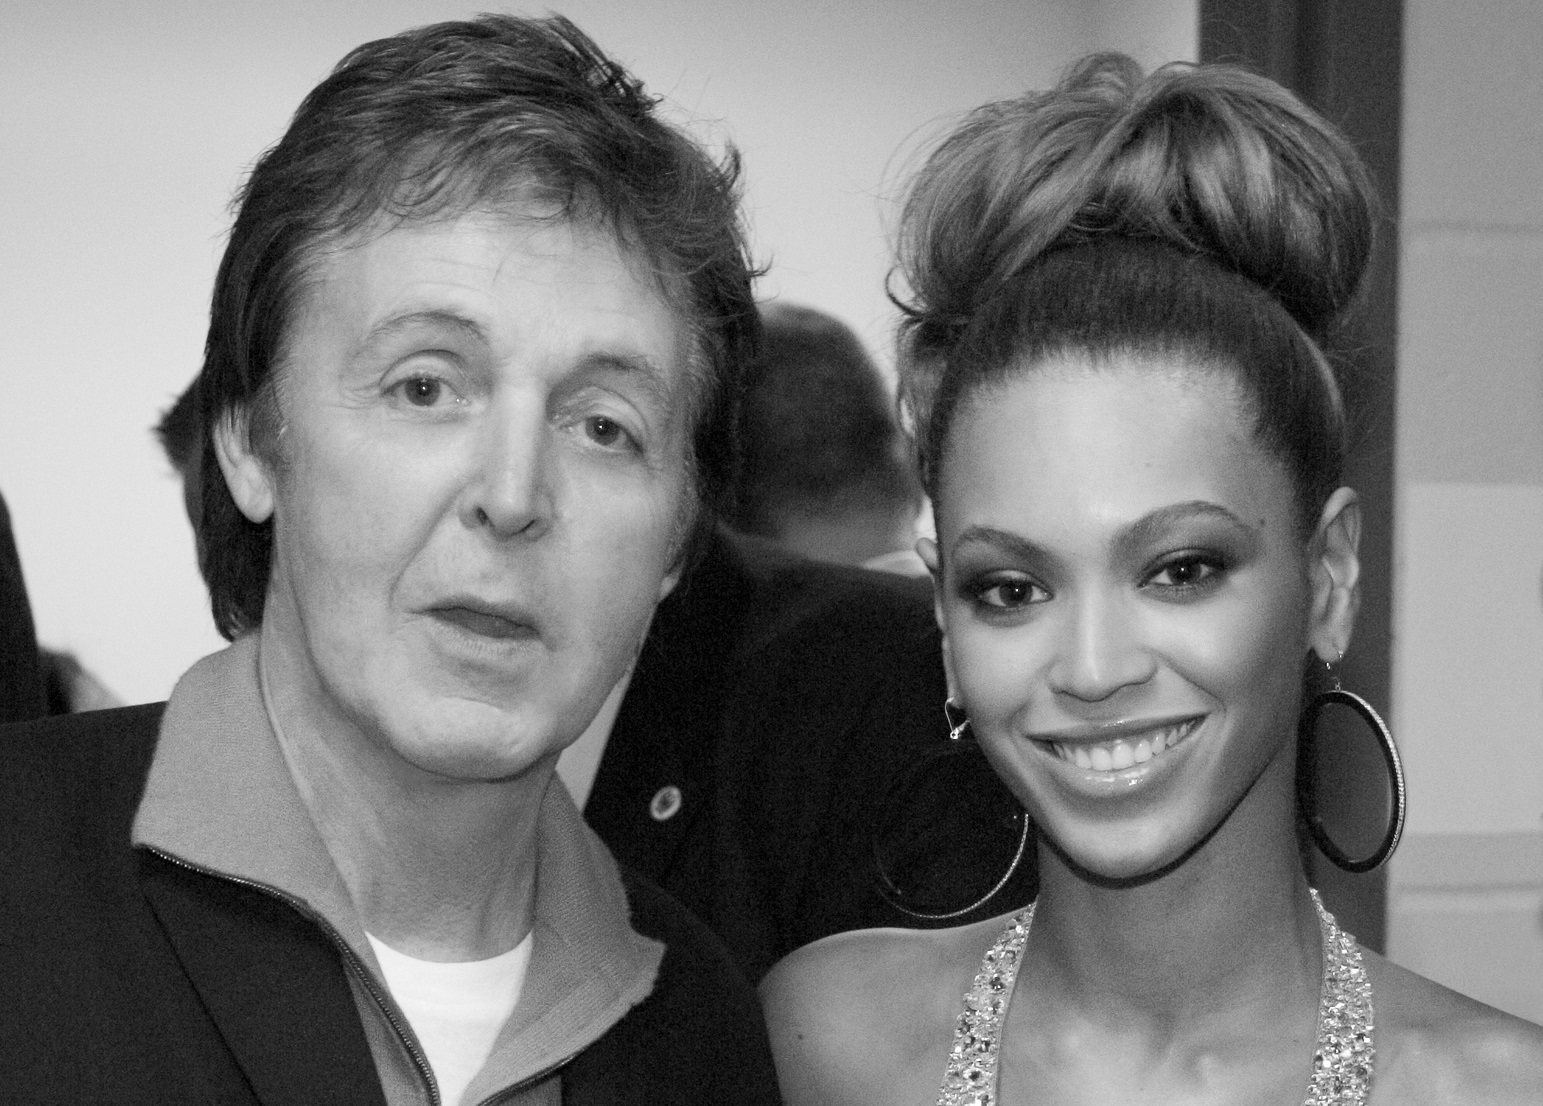 Paul McCartney ficou ‘muito feliz’ com cover de ‘Blackbird’ feito por Beyoncé